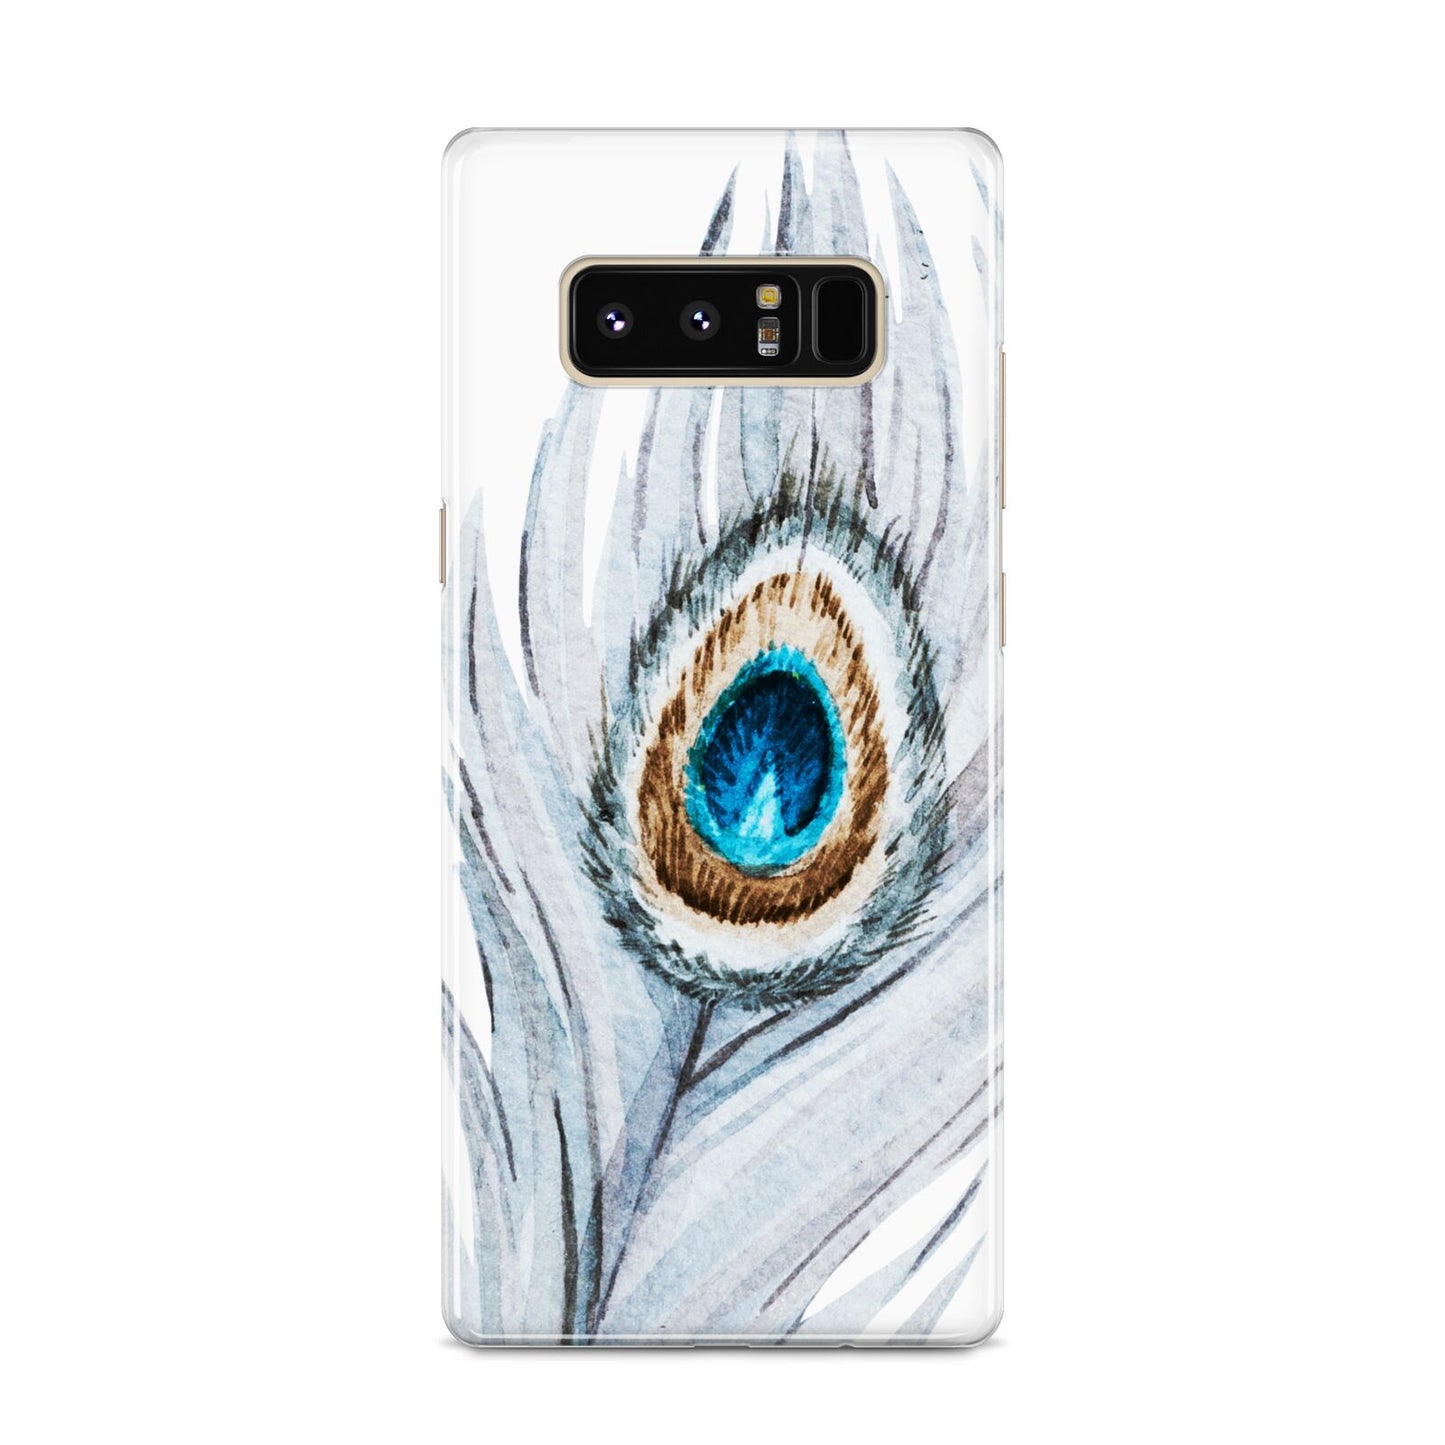 Peacock Samsung Galaxy S8 Case